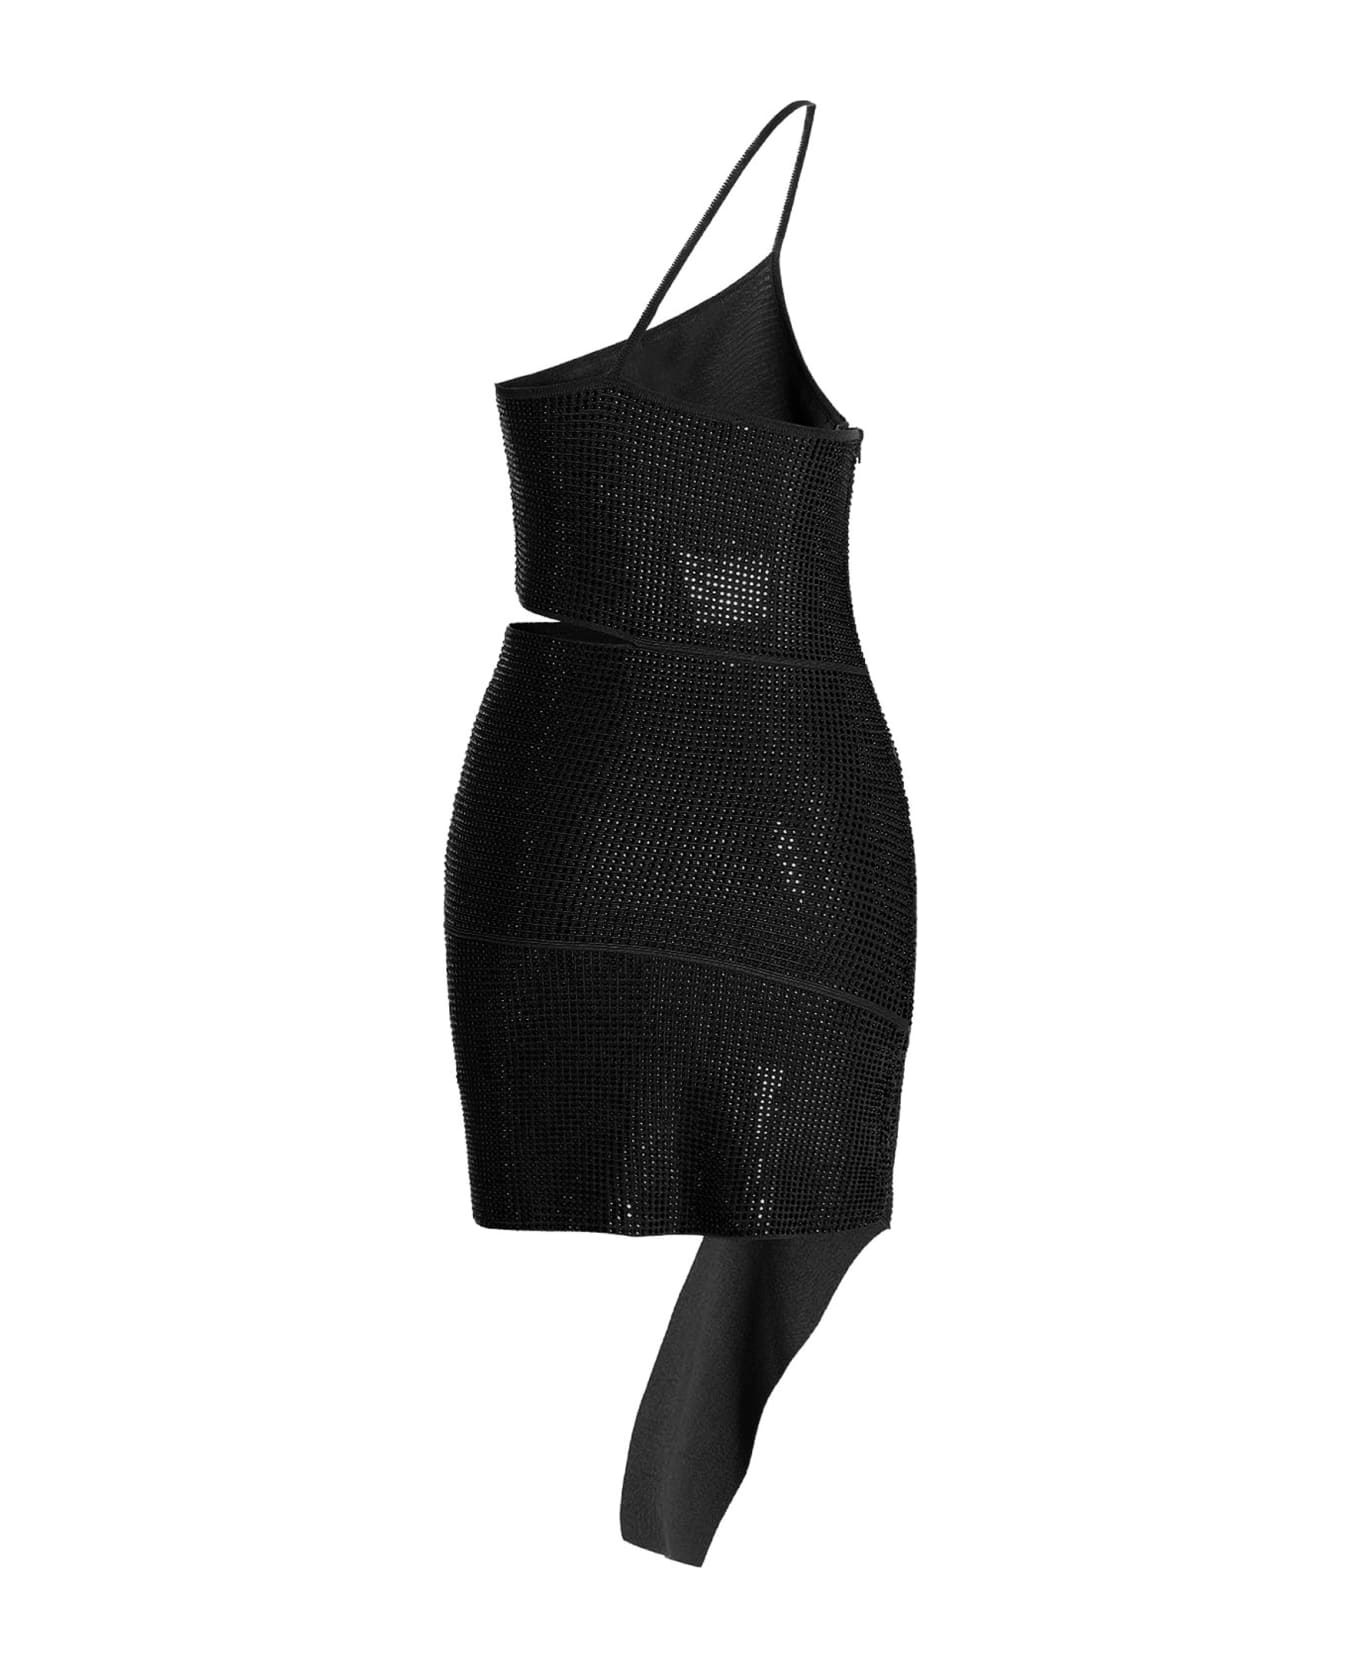 ANDREĀDAMO Sequin One Shoulder Dress - Black  